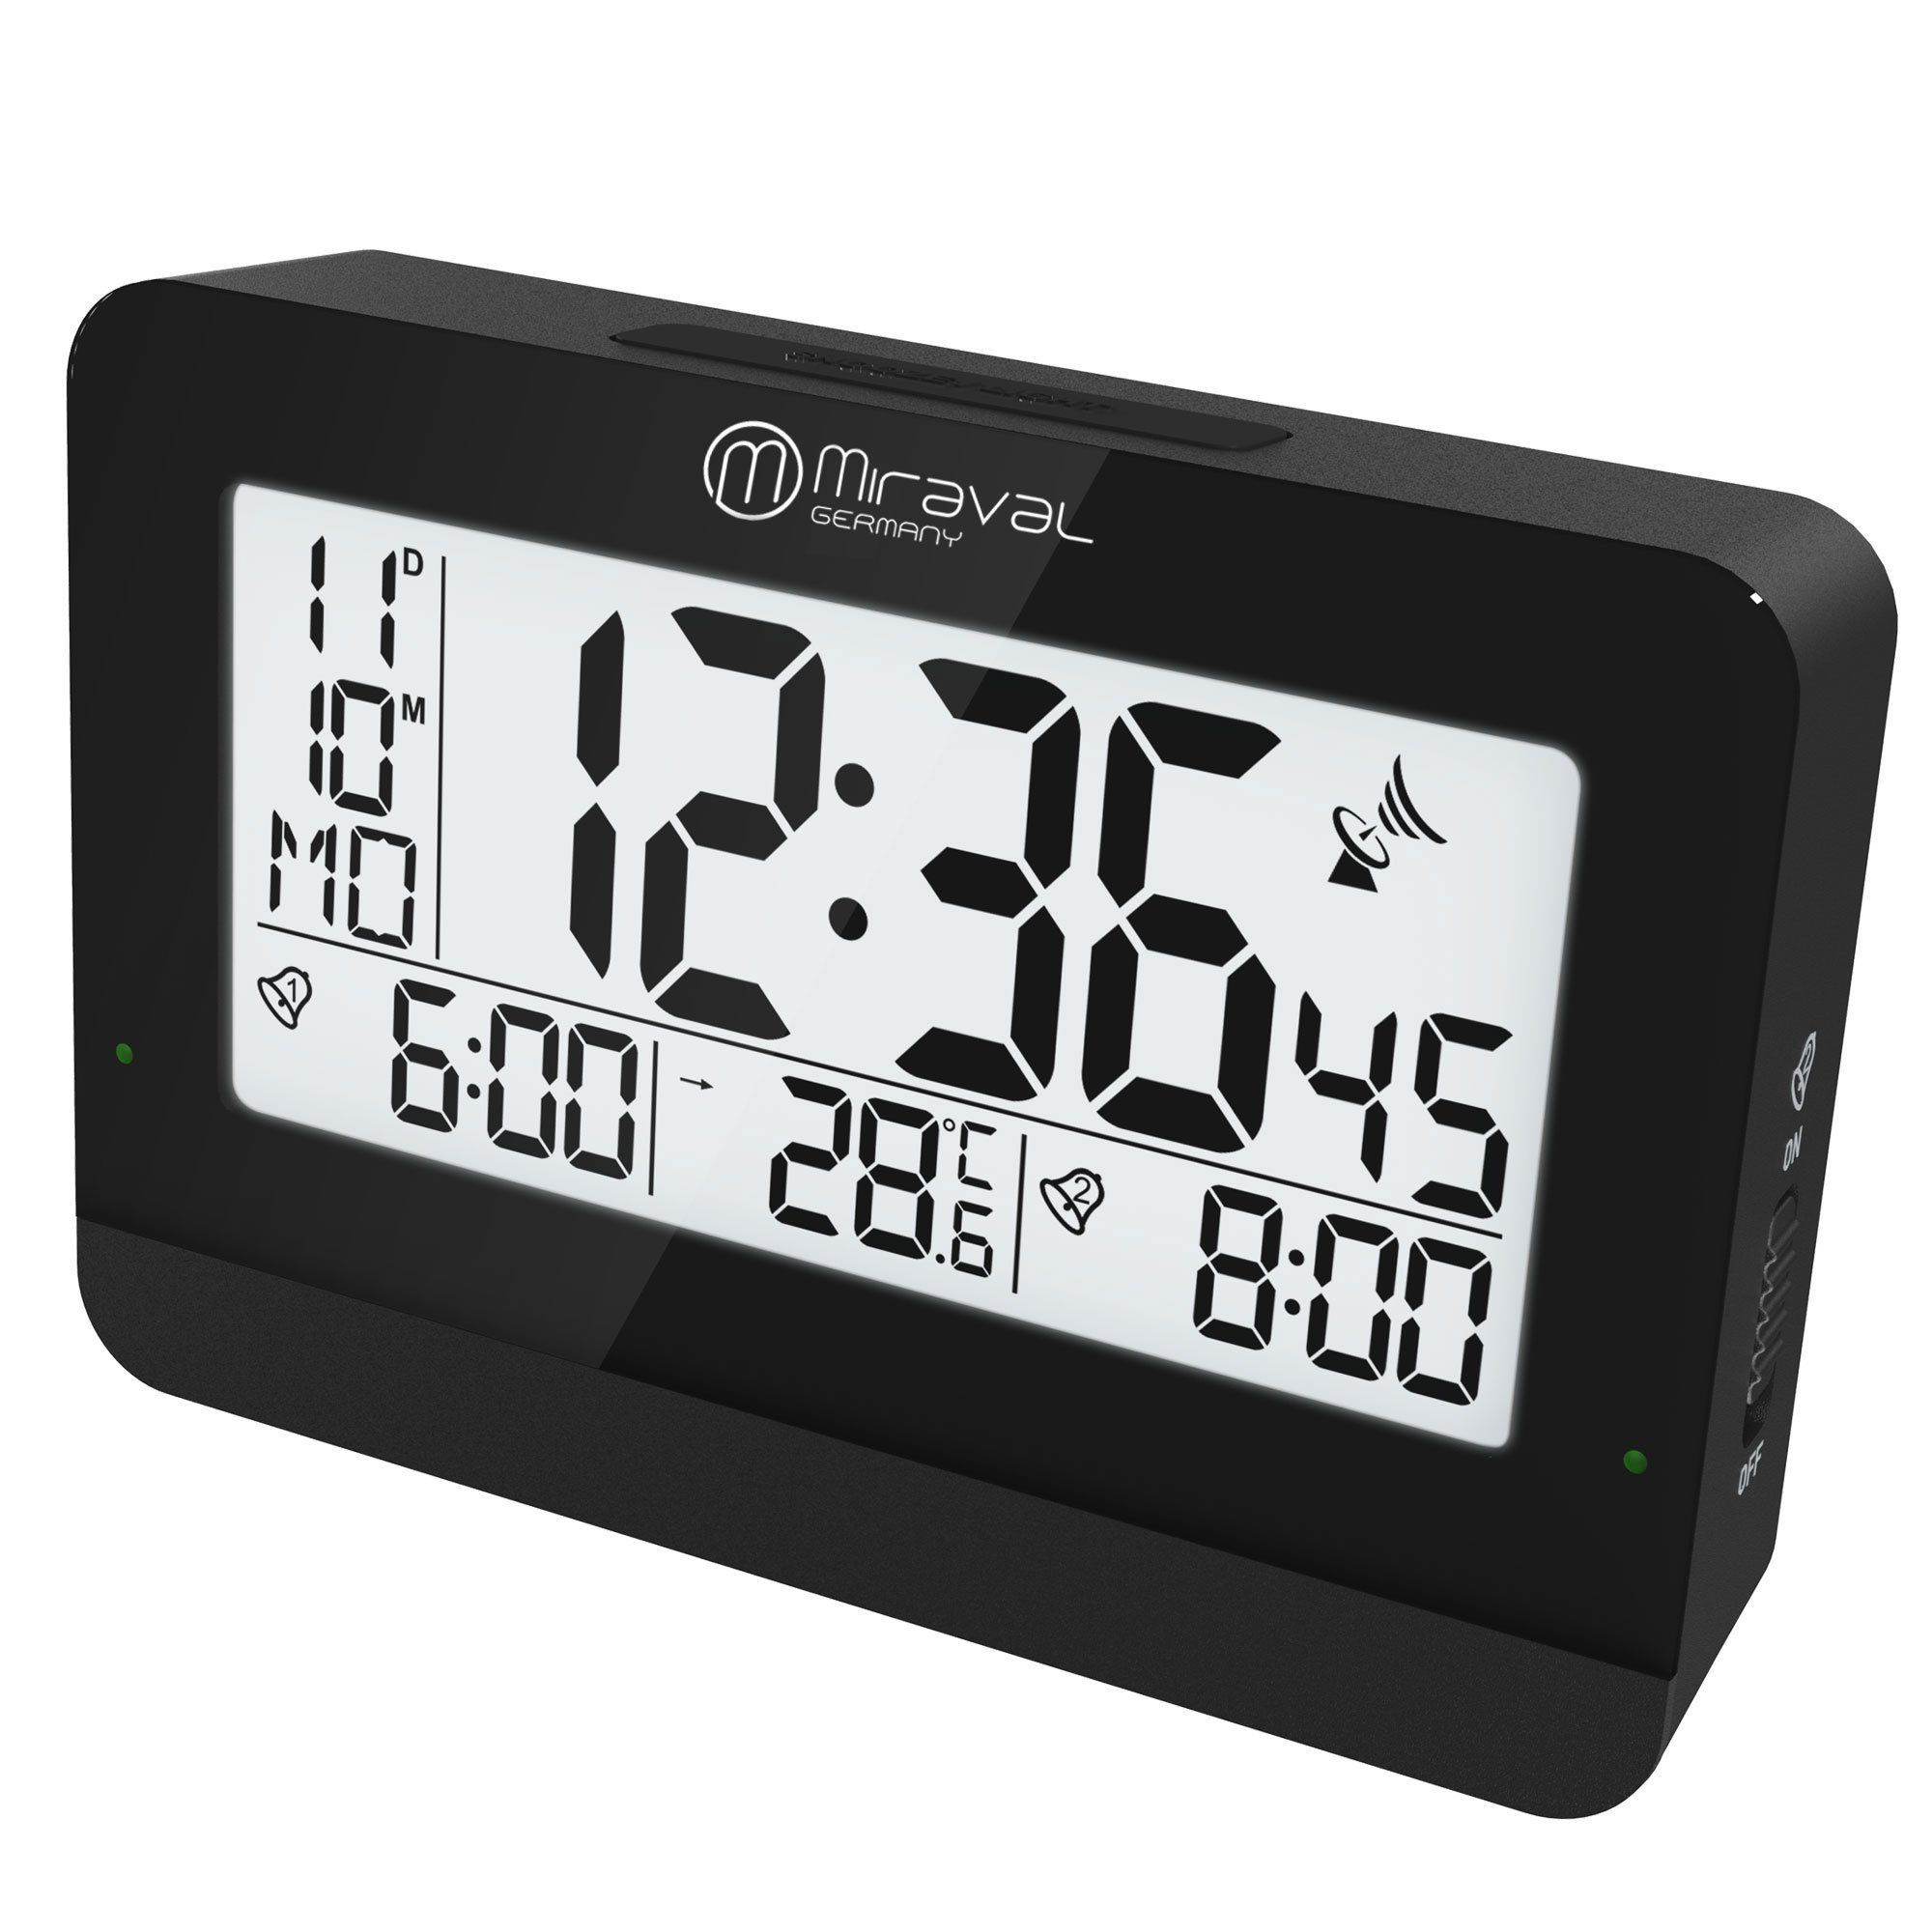 Solar Digitale Uhr Für Auto Beleuchtet Auto Uhr Uhren Portable Stick-auf  Digitale Uhr Batterie Betrieben Und Solar Powered auto - AliExpress